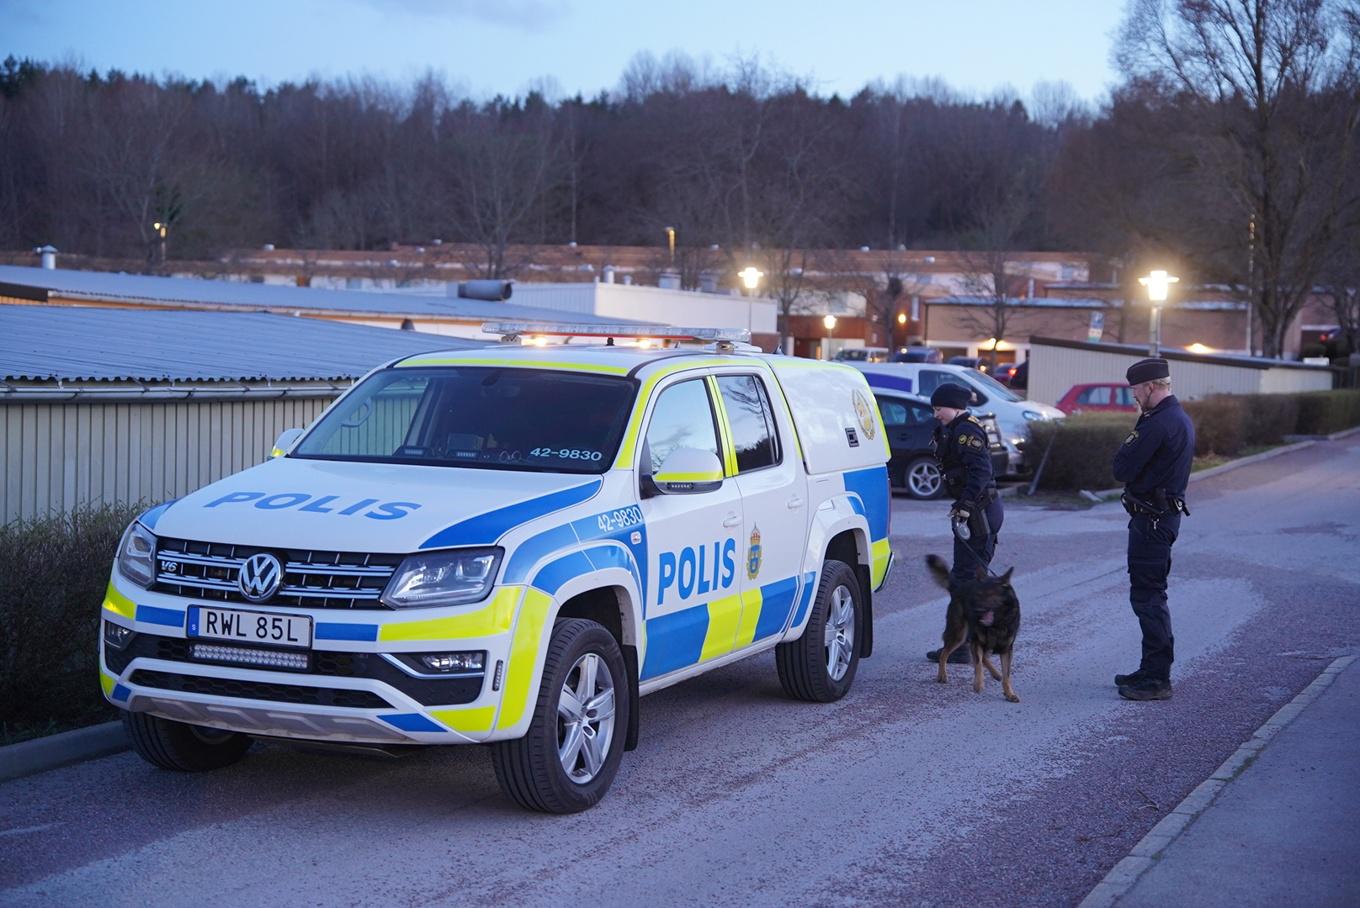 Polis, ambulans och avspärrningar efter att tonårspojken mördats i stadsdelen Navestad i Norrköping 14 april. Foto: Niklas Luks/TT